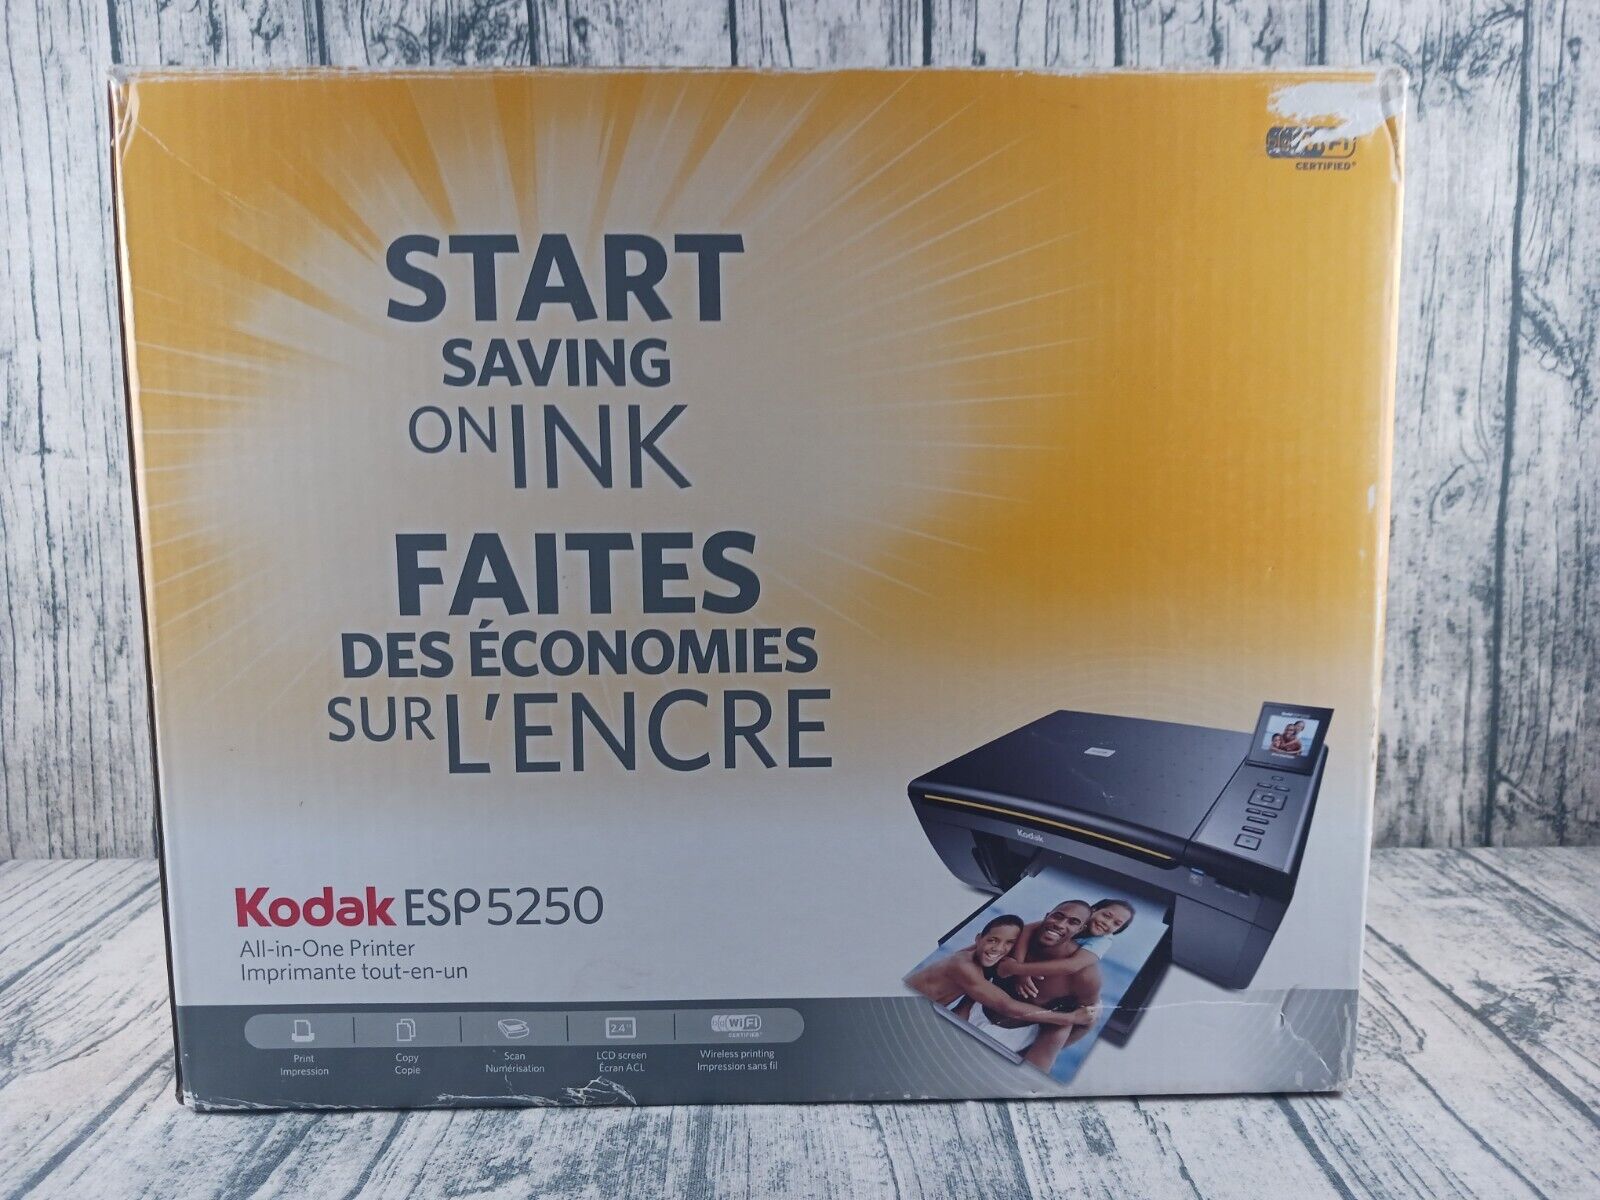 Kodak (ESP 5250) Wireless WiFi All-in-One Inkjet Printer / Scanner - Open Box